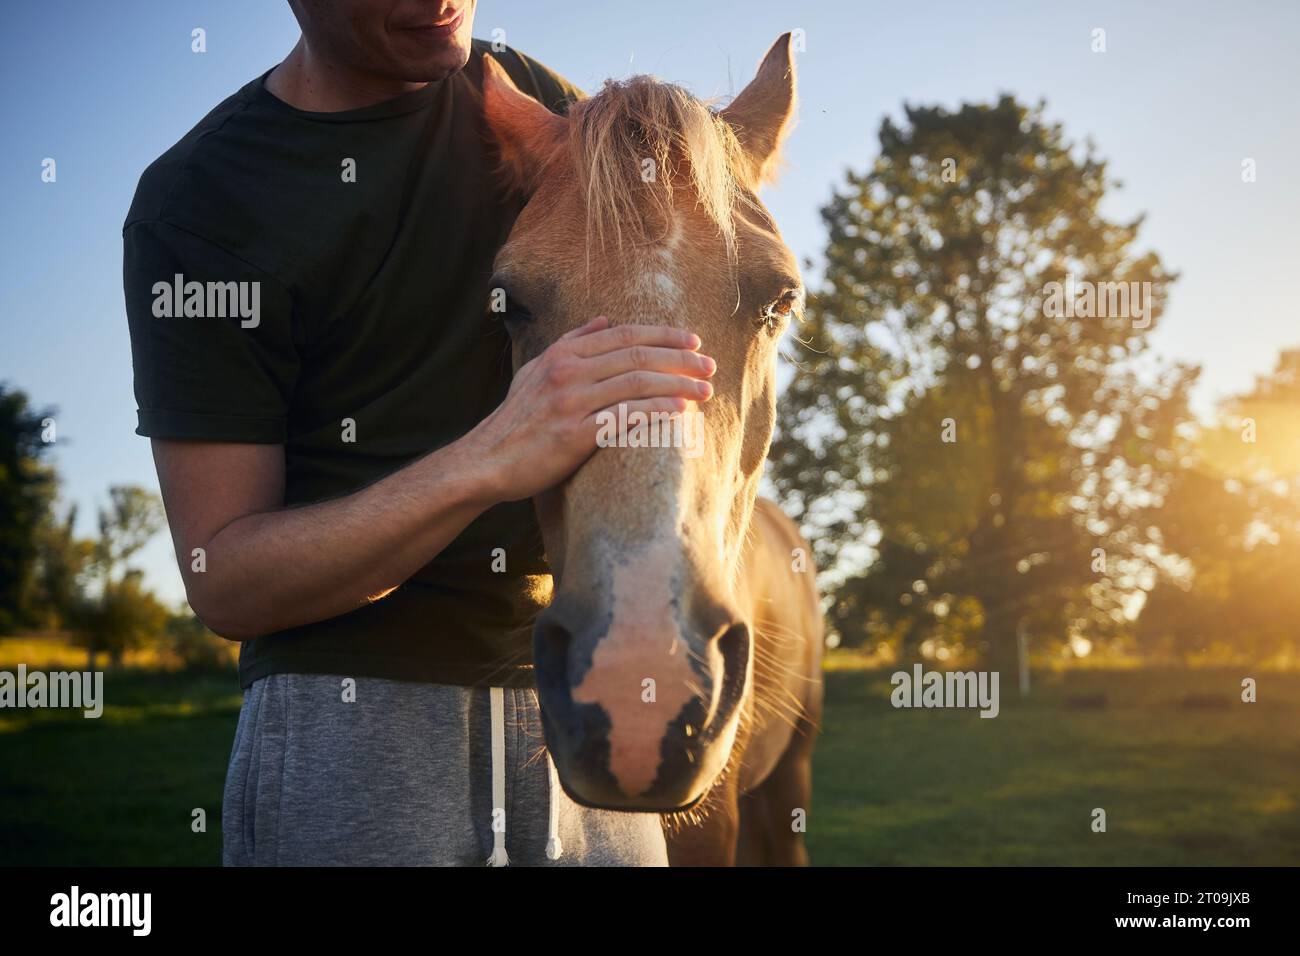 L'uomo accarezza la testa del cavallo terapeutico al bellissimo tramonto estivo. Temi ippoterapia, cura e amicizia tra persone e animali. Foto Stock